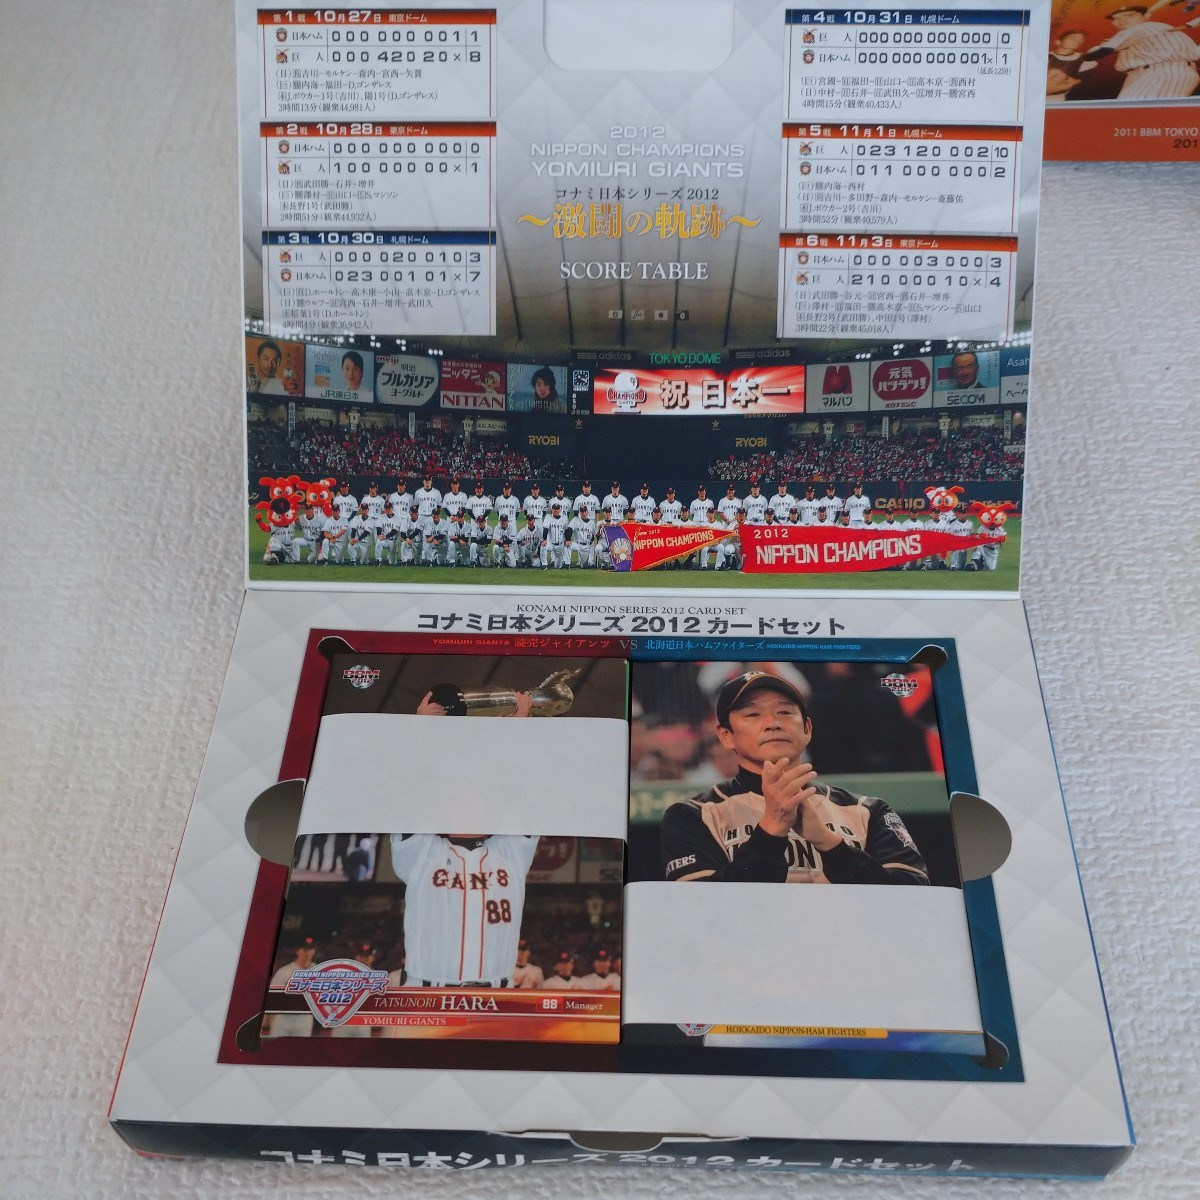 a11 野球カード ベースボールカード ダイアモンドエイジ 1989 2012 東京6大学野球カードセット コナミ日本シリーズ2012カードセット _画像5